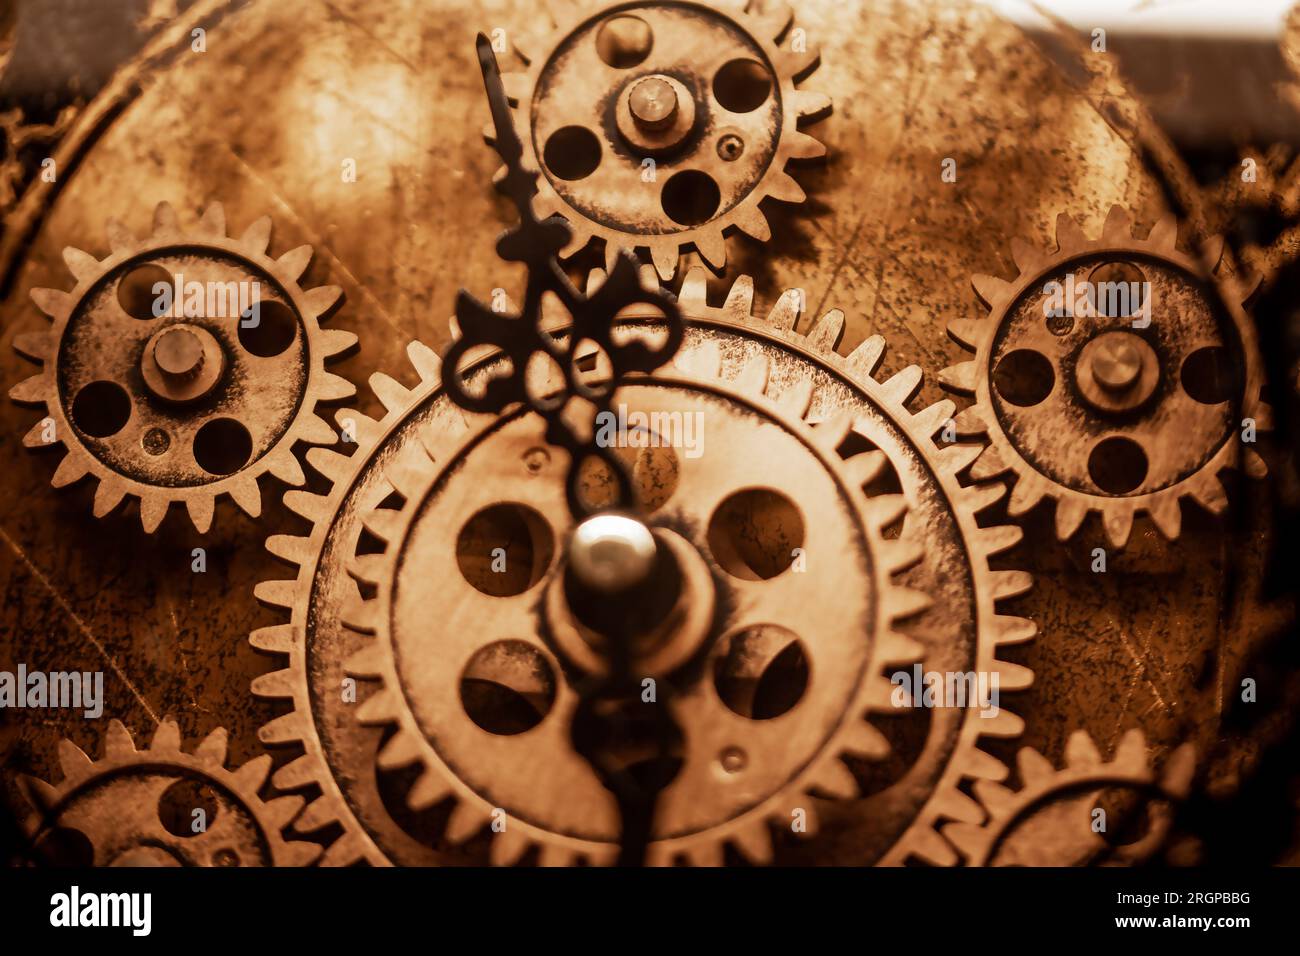 Gros plan sur le cadran d'une montre antique. Horloge vintage mesurant le temps. Roues dentées dorées Banque D'Images